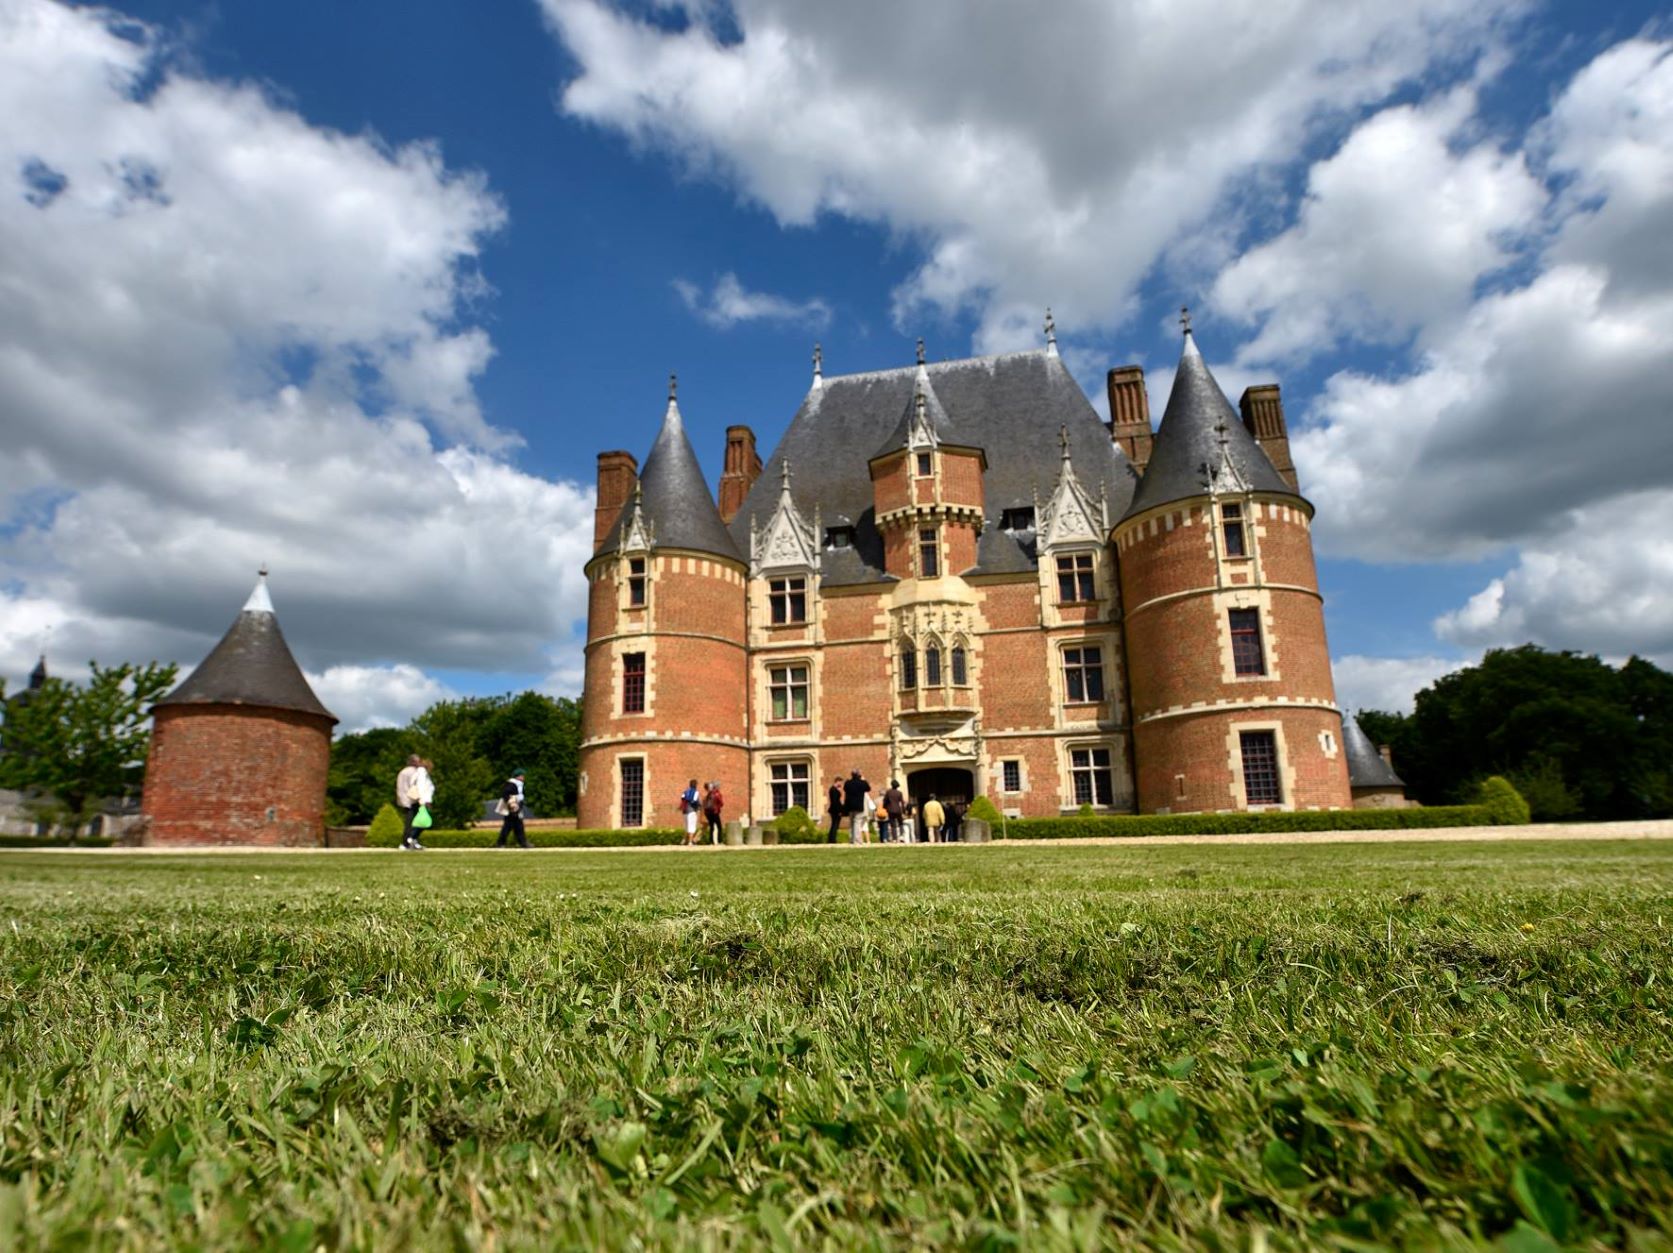 Chateau-de-Martainville-dpt76-2015-MARTAINVILLE-EPREVILLE-site-patrimoine-chateau-8-002-3.jpg